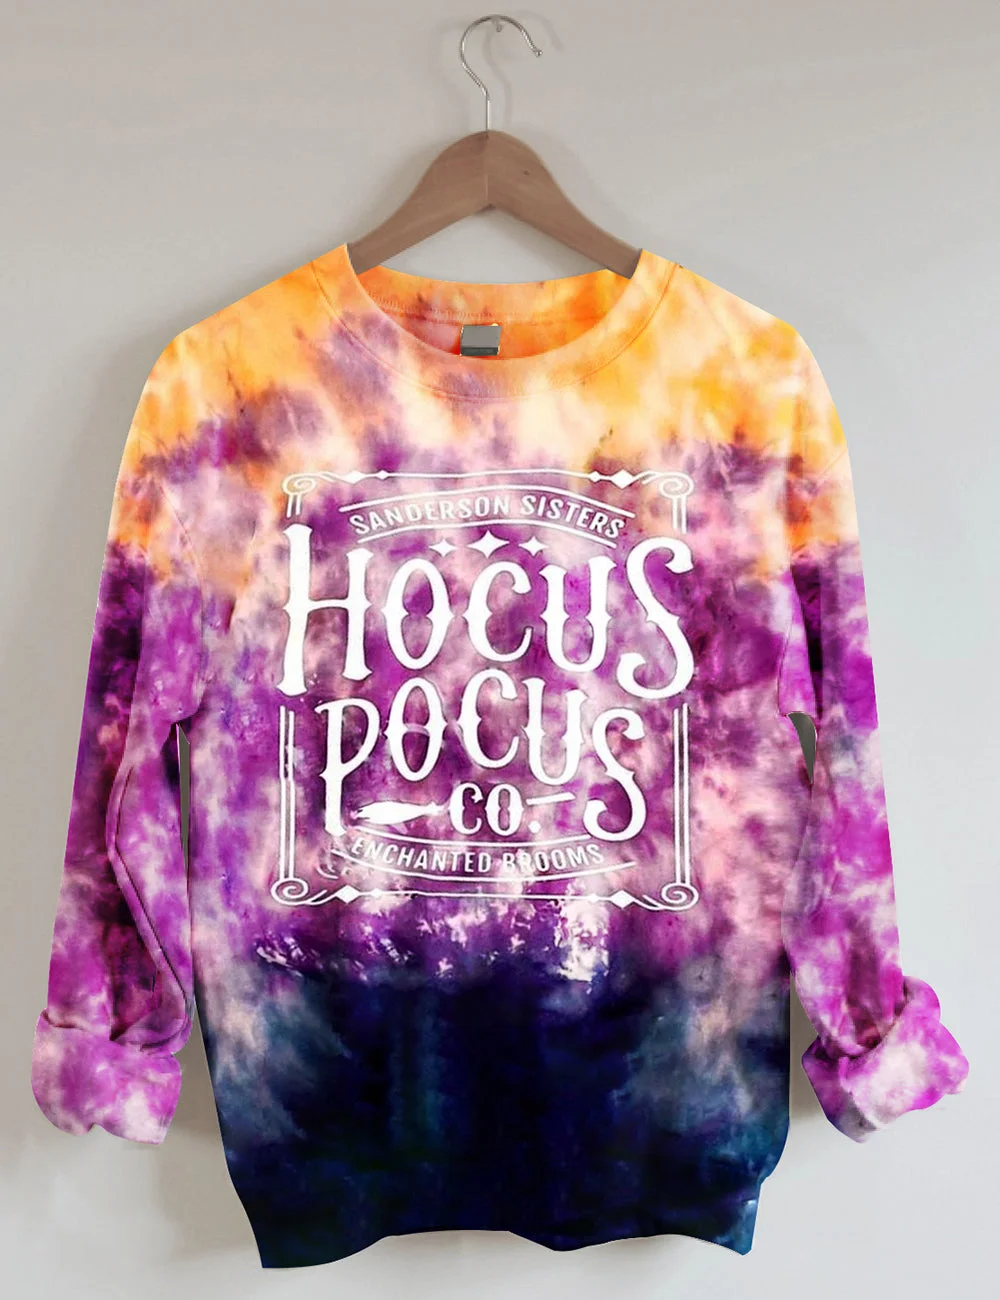 Hocus Pocus Co. Shirt